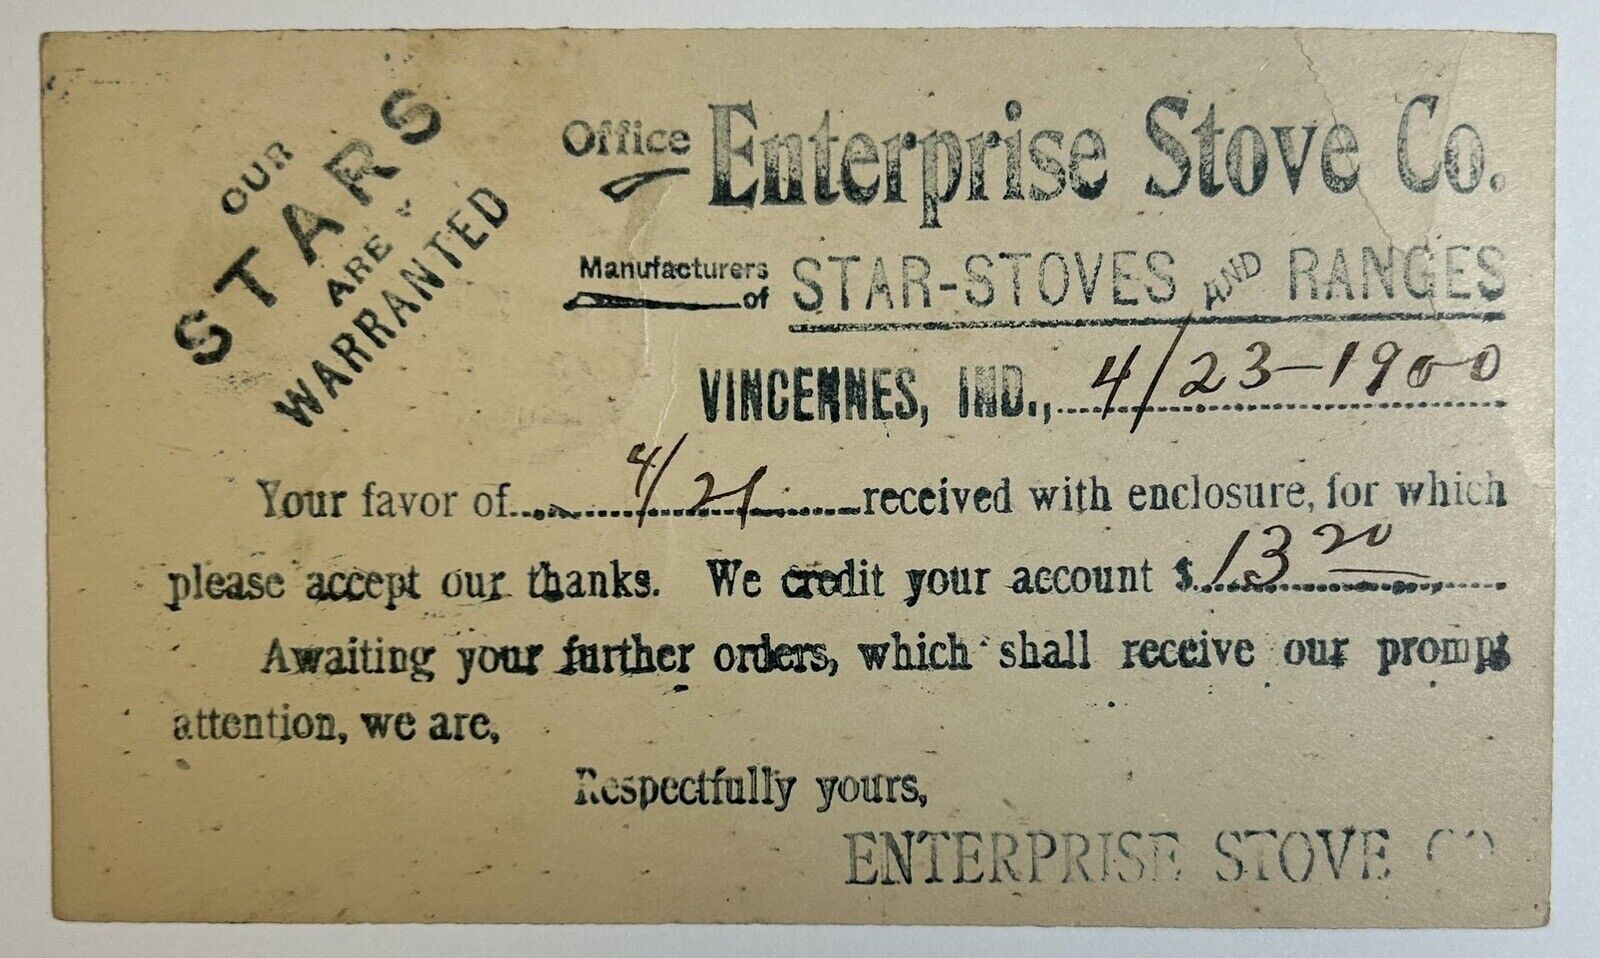 Enterprise Stove Co. Vincennes, Indiana Antique Order Receipt Postcard, 1900